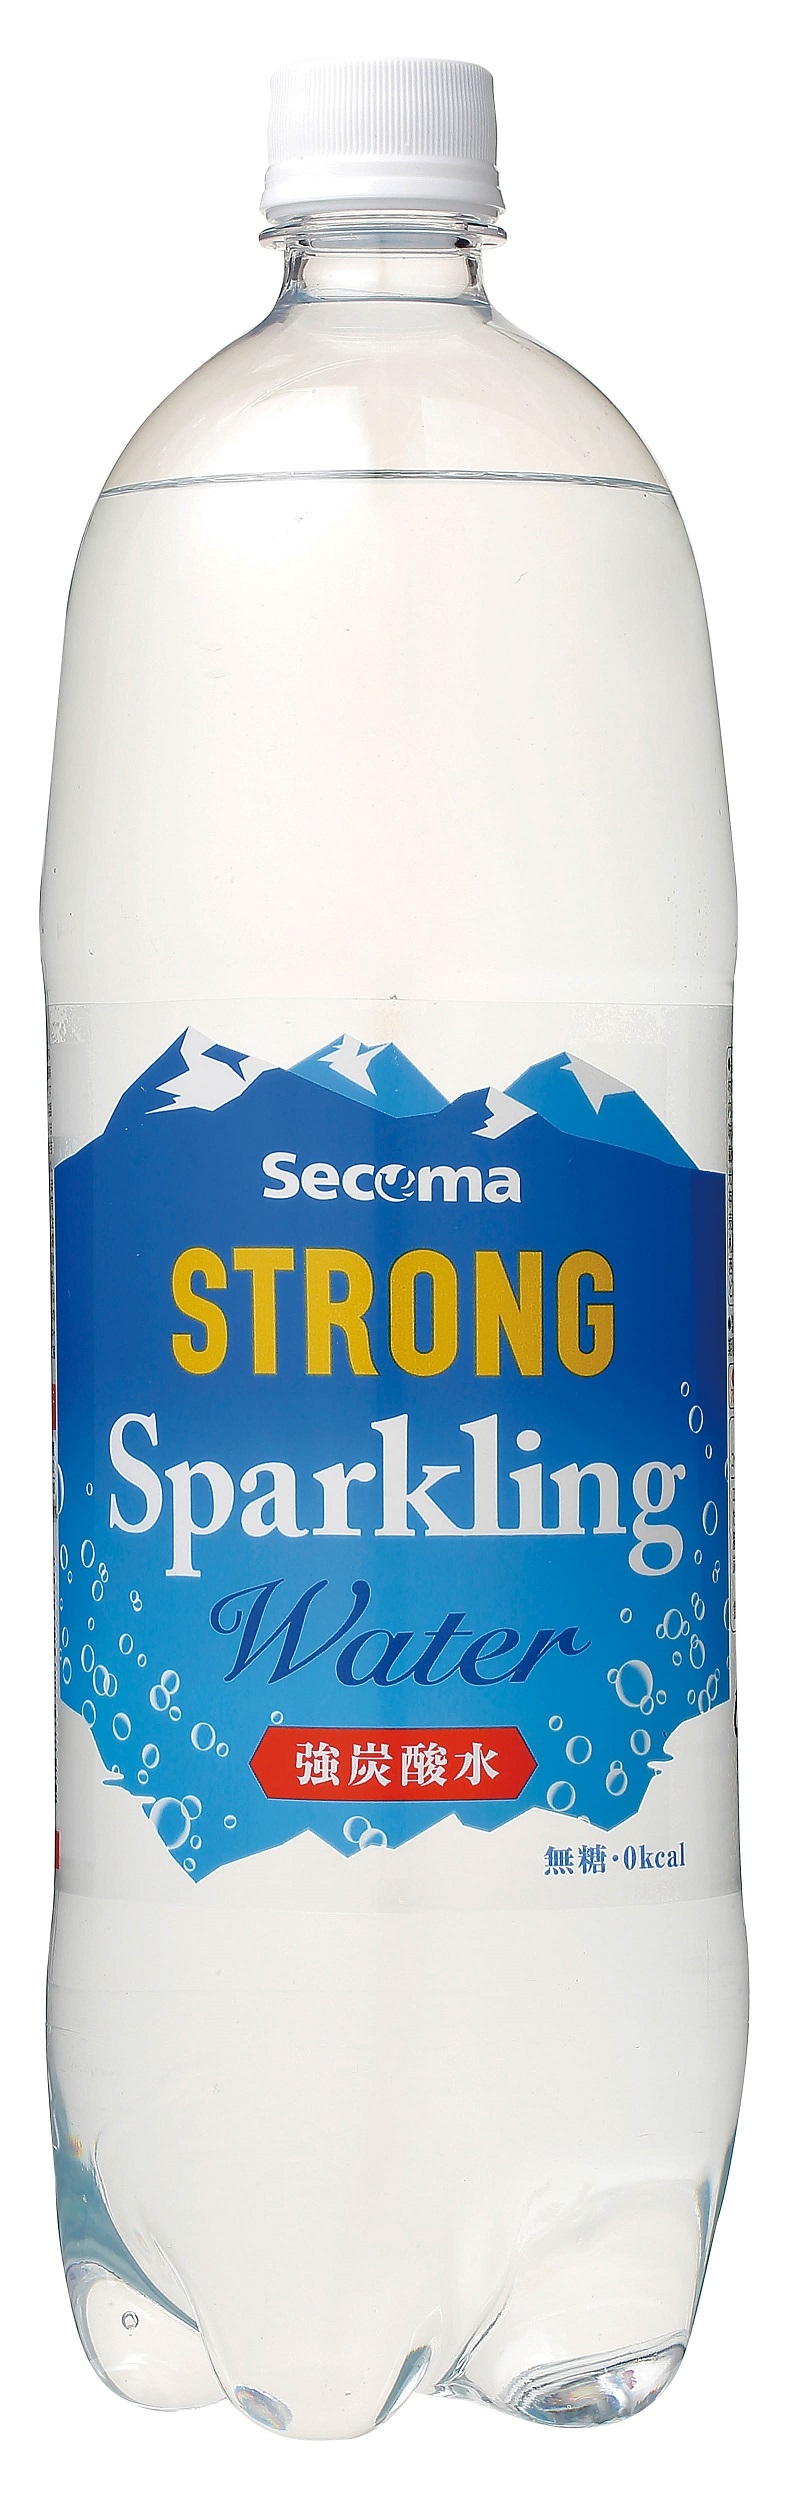 Secoma ストロングスパークリングウォーター 1.5L 8本入 - セイコーマート公式通販